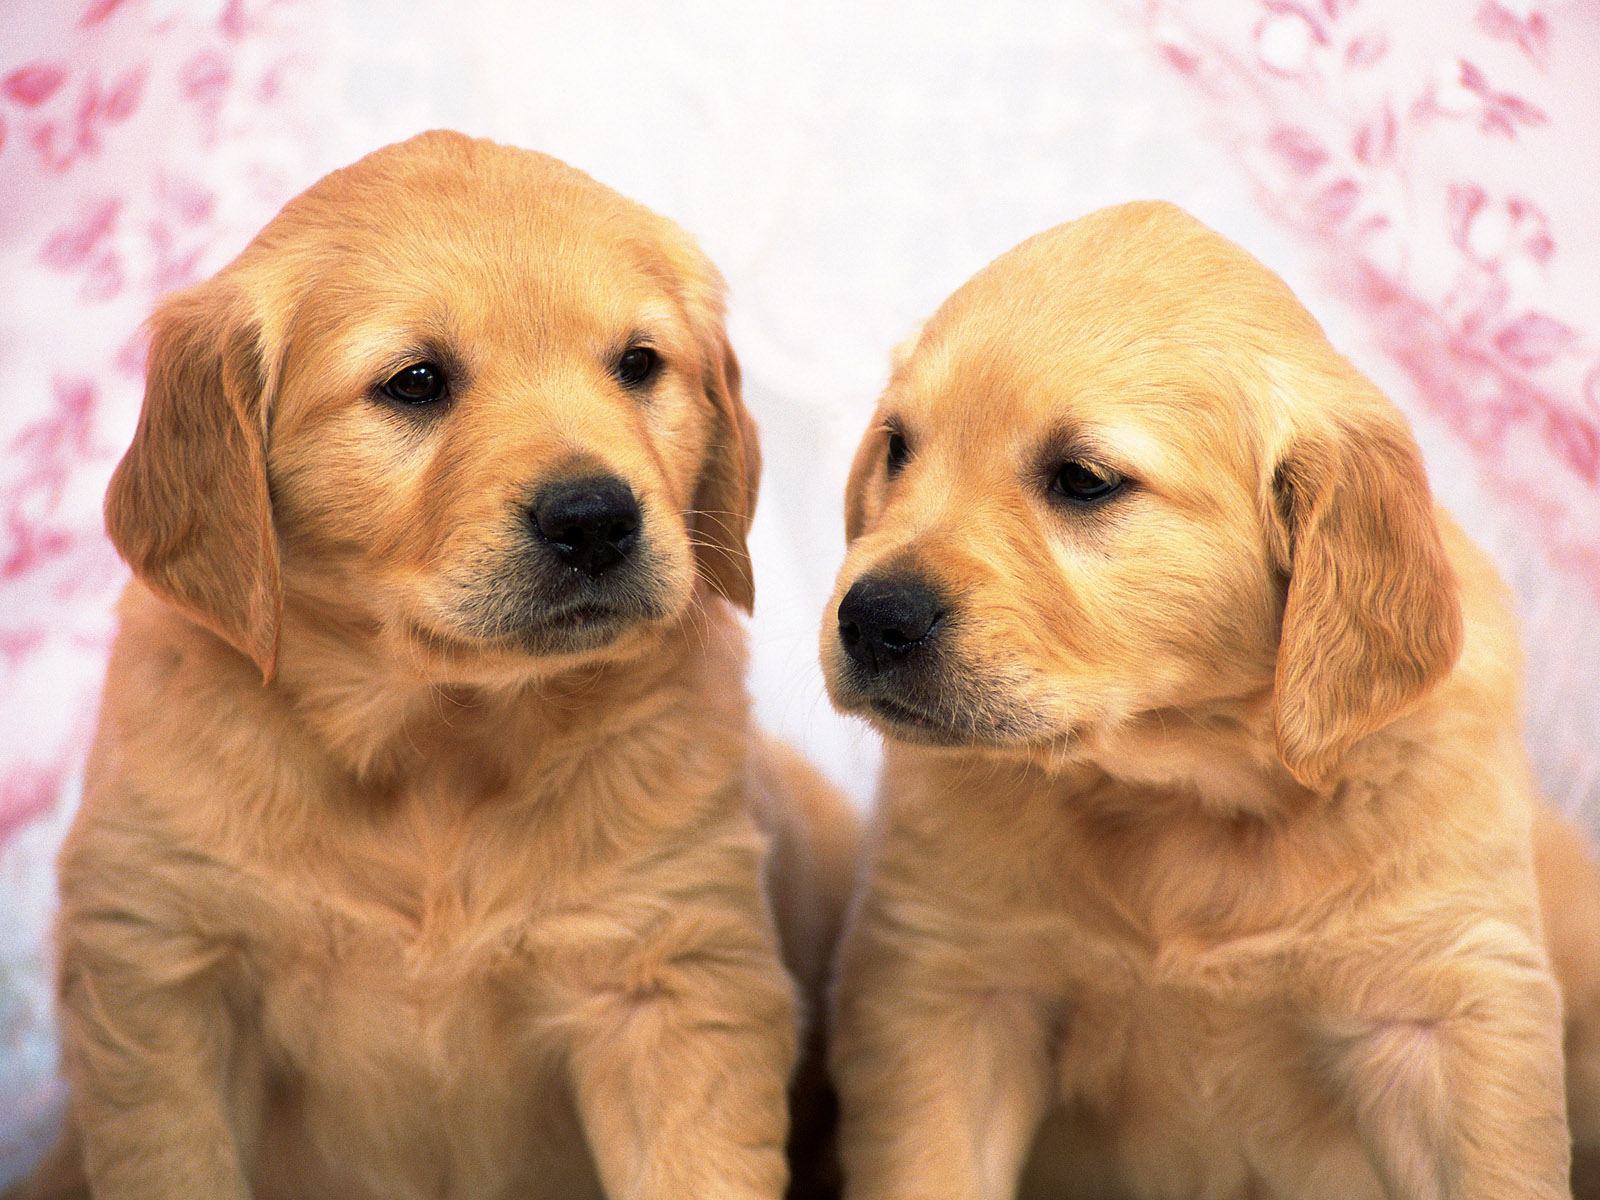 Cute puppy dog on HD desktop wallpaper